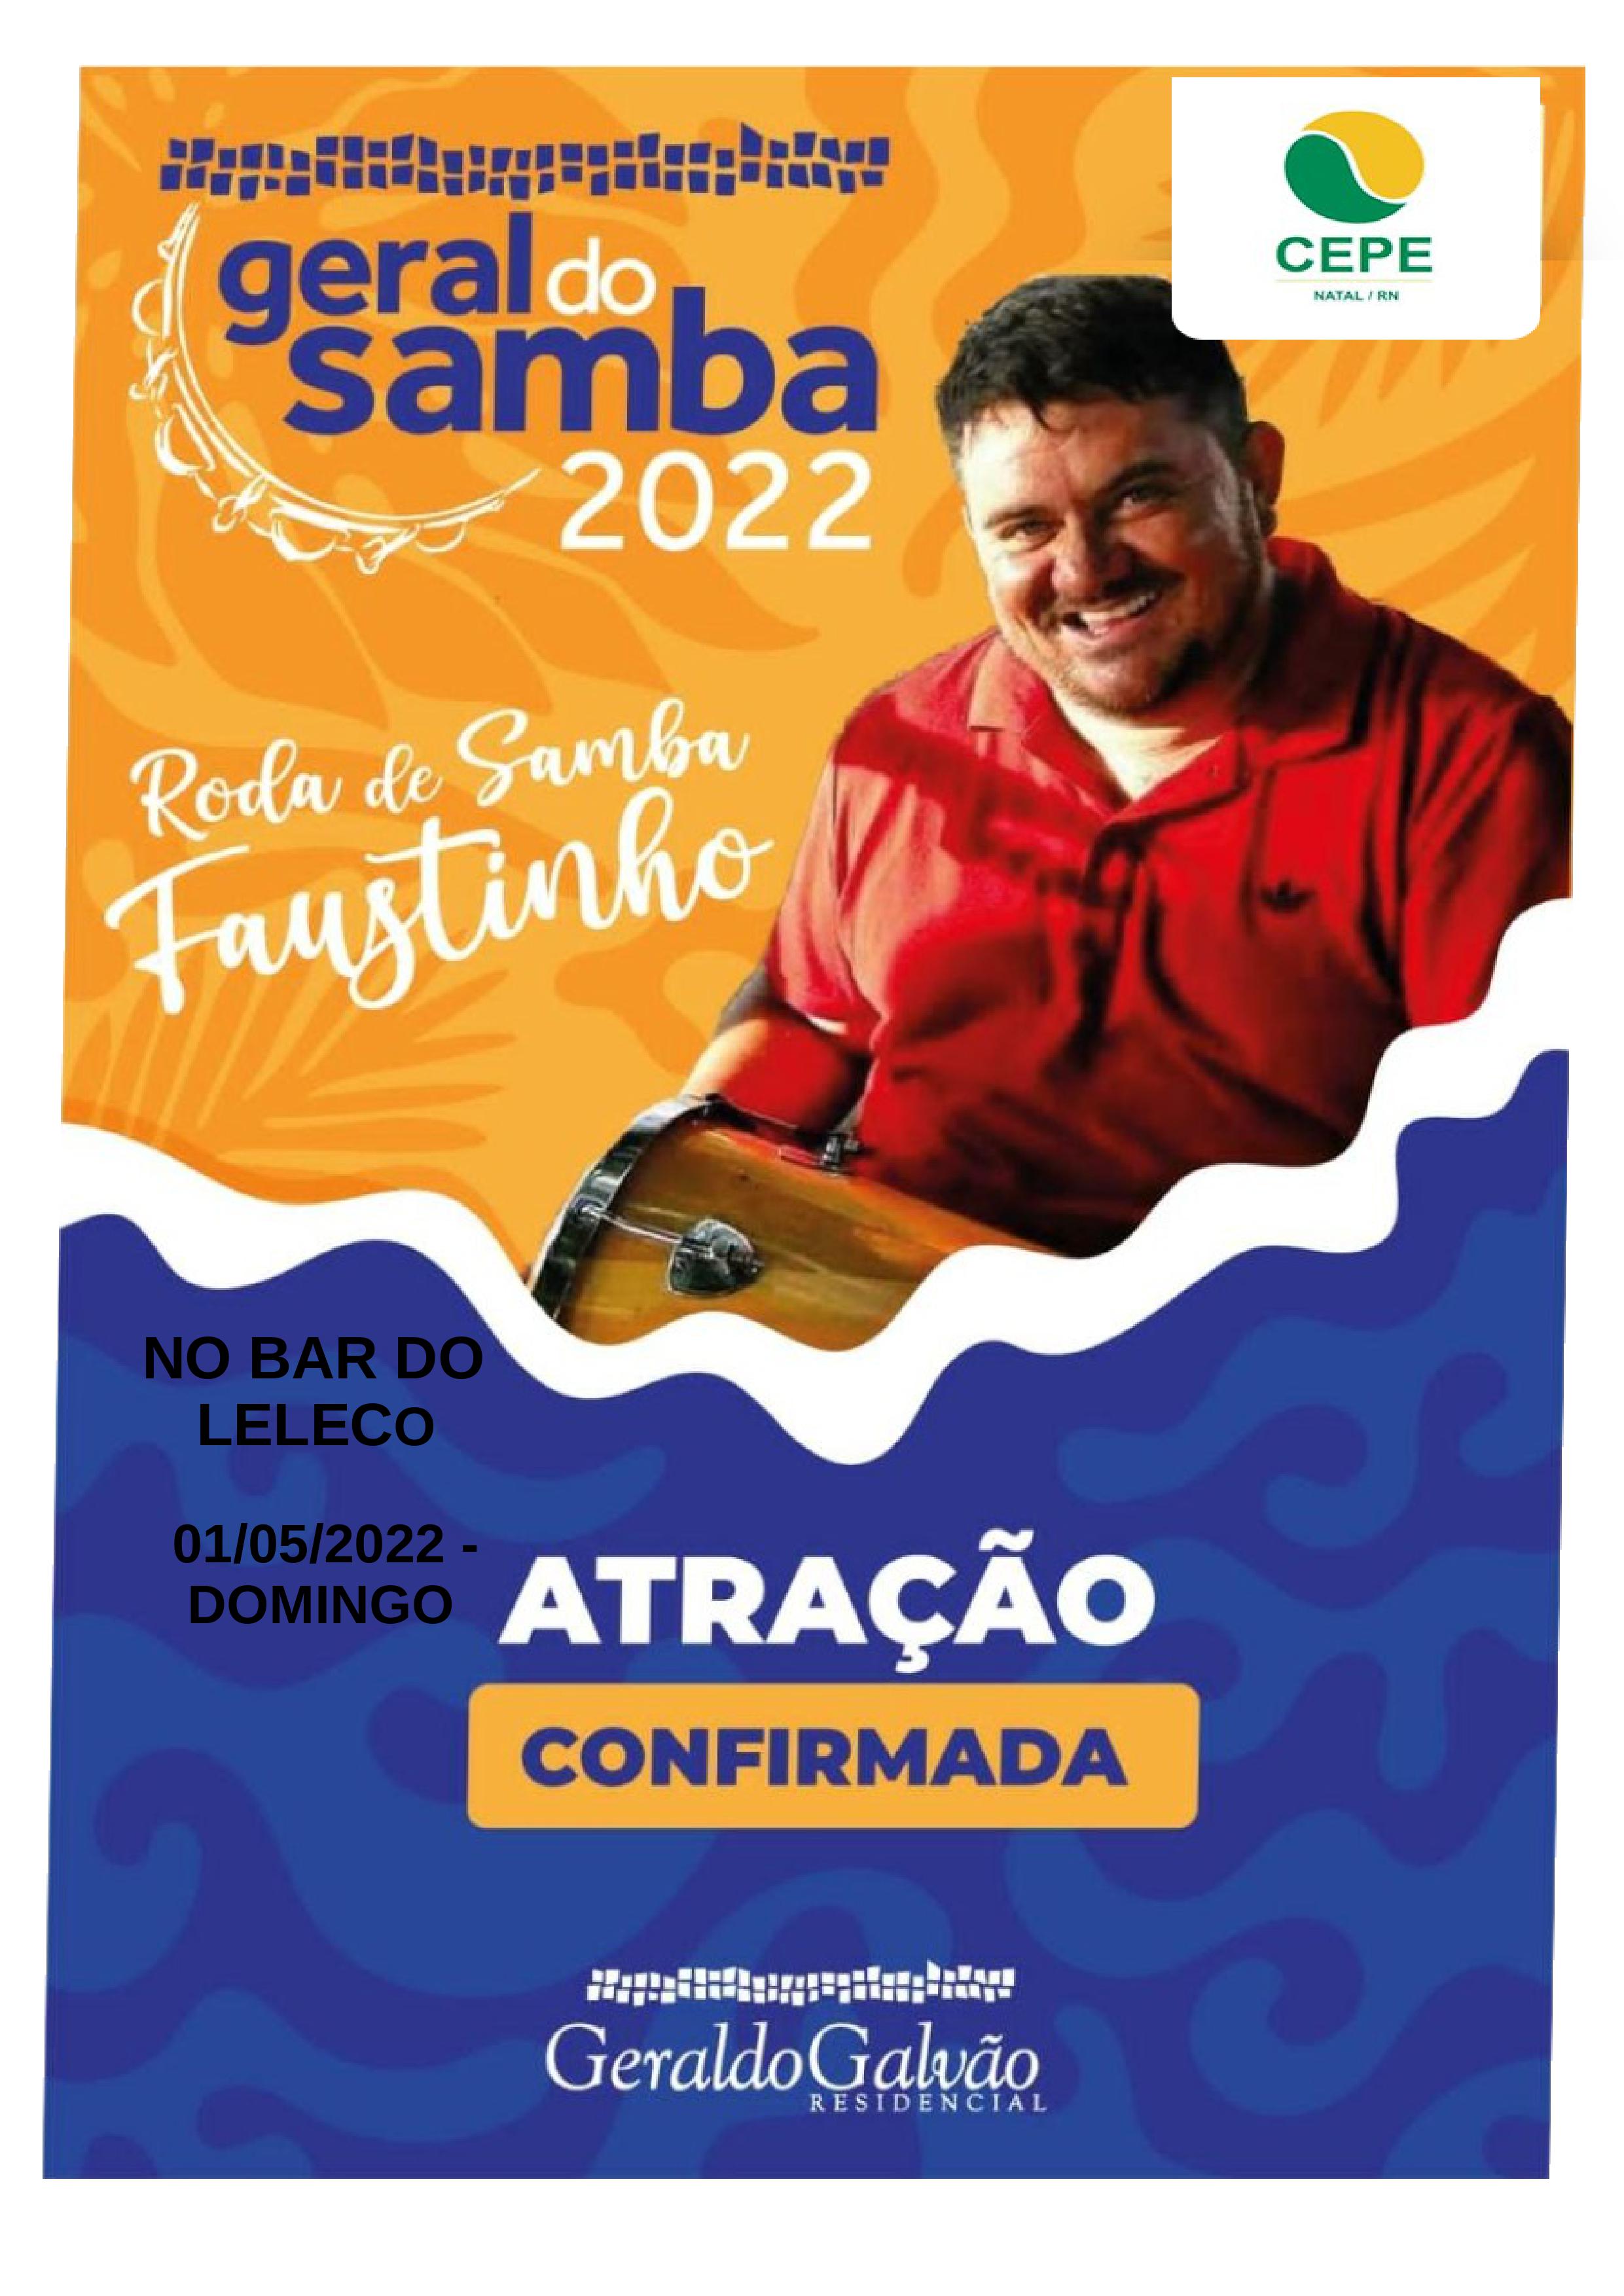 DOMINGUEIRA COM RODA DE SAMBA DO FAUSTINHO